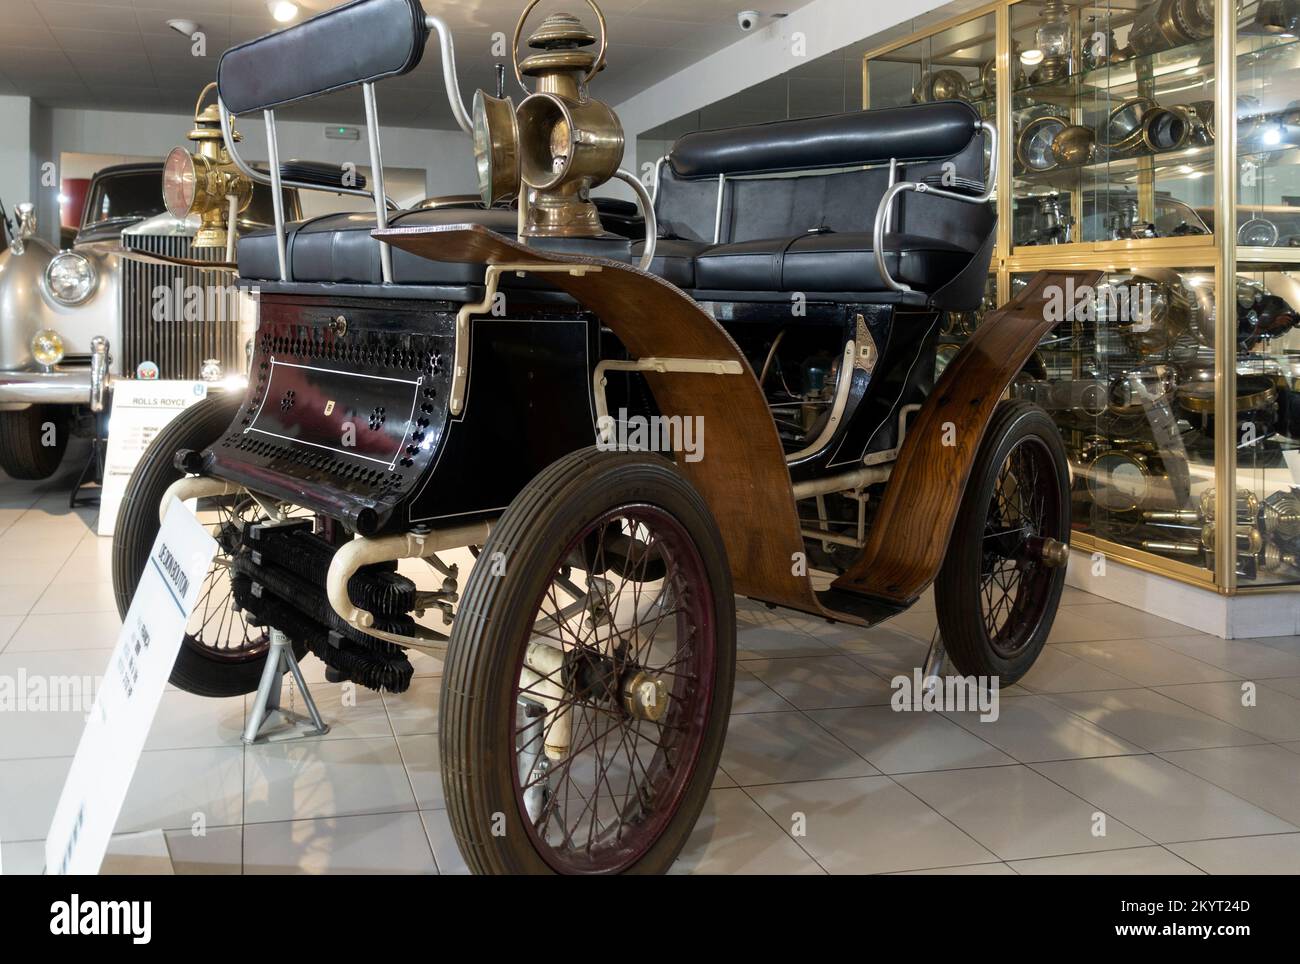 De Dion-Bouton.model vis a vis (1899).France.Automobile Museum.Encamp.Andorra Stock Photo